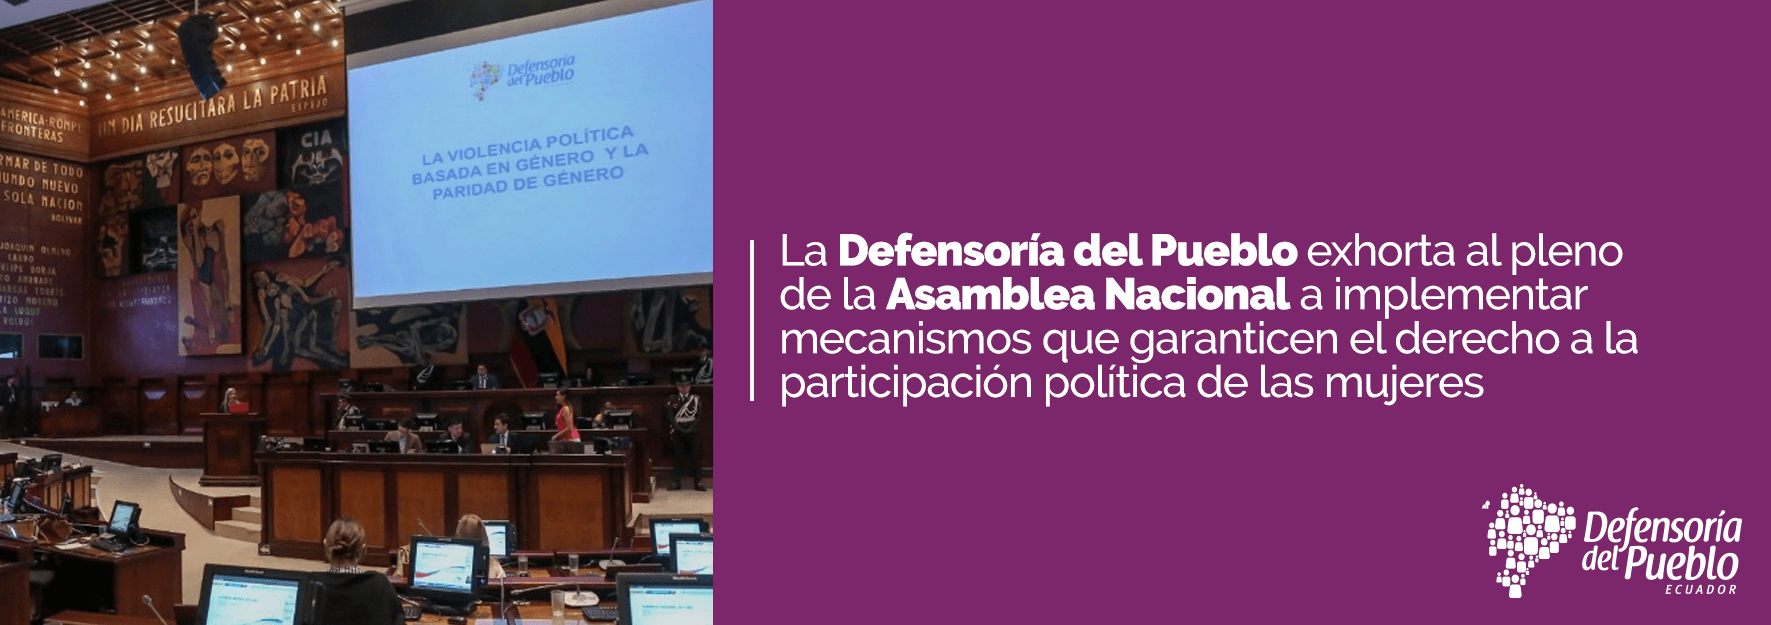 Defensoría del Pueblo exhorta al pleno de la Asamblea Nacional a implementar mecanismos que garanticen el derecho a la participación política de las mujeres